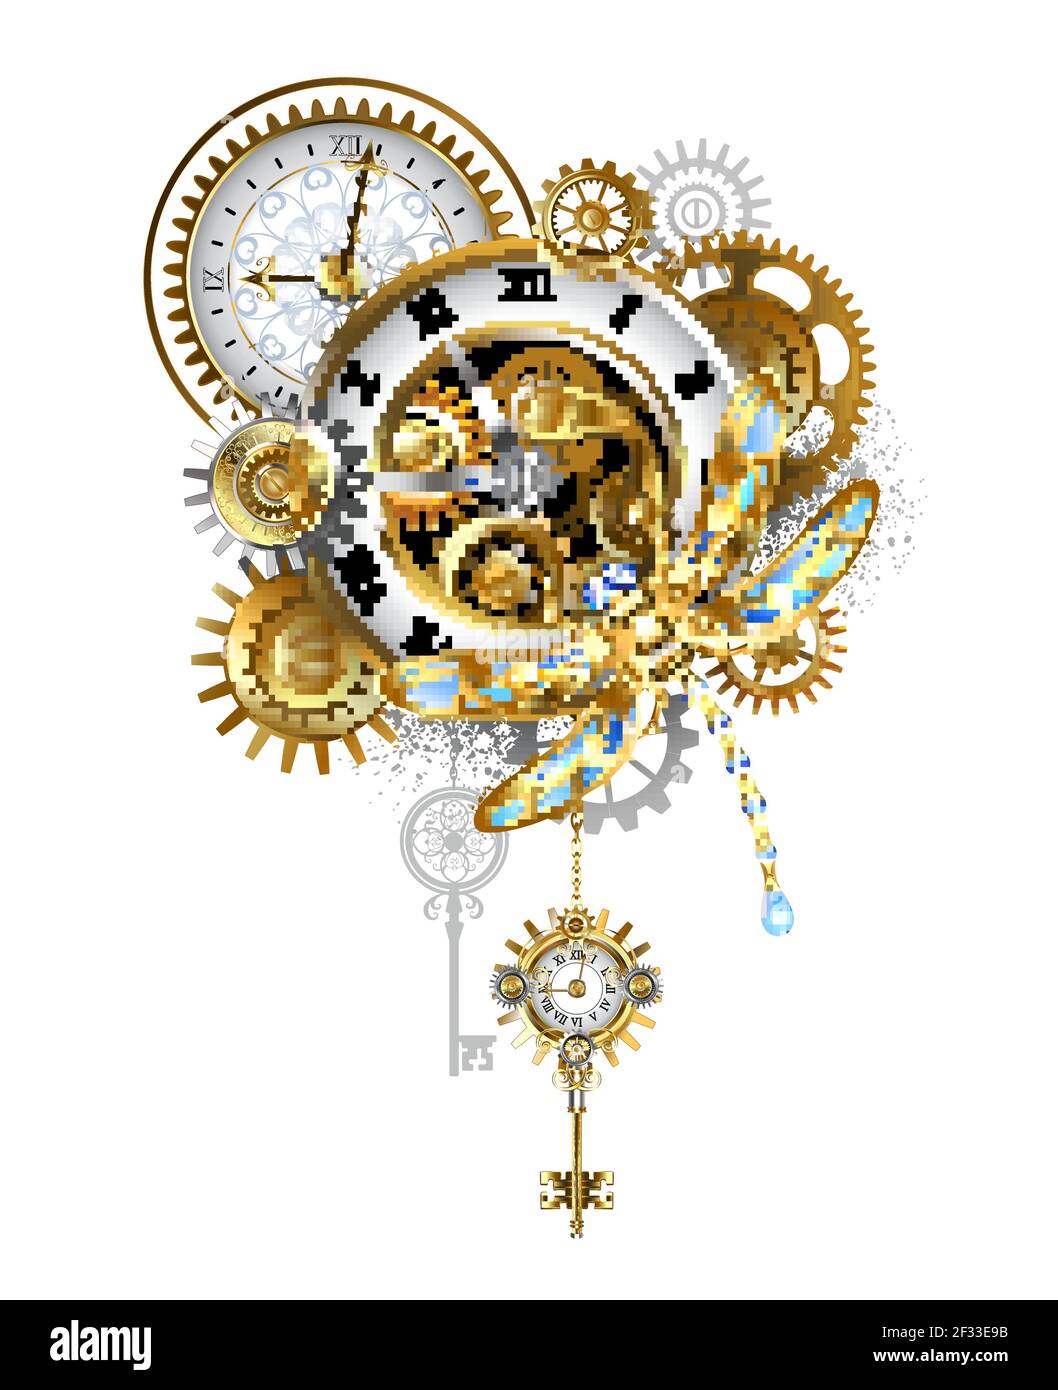 Libélula mecánica con alas azules y reloj antiguo dorado, engranajes dorados sobre fondo blanco. Estilo Steampunk. Ilustración del Vector